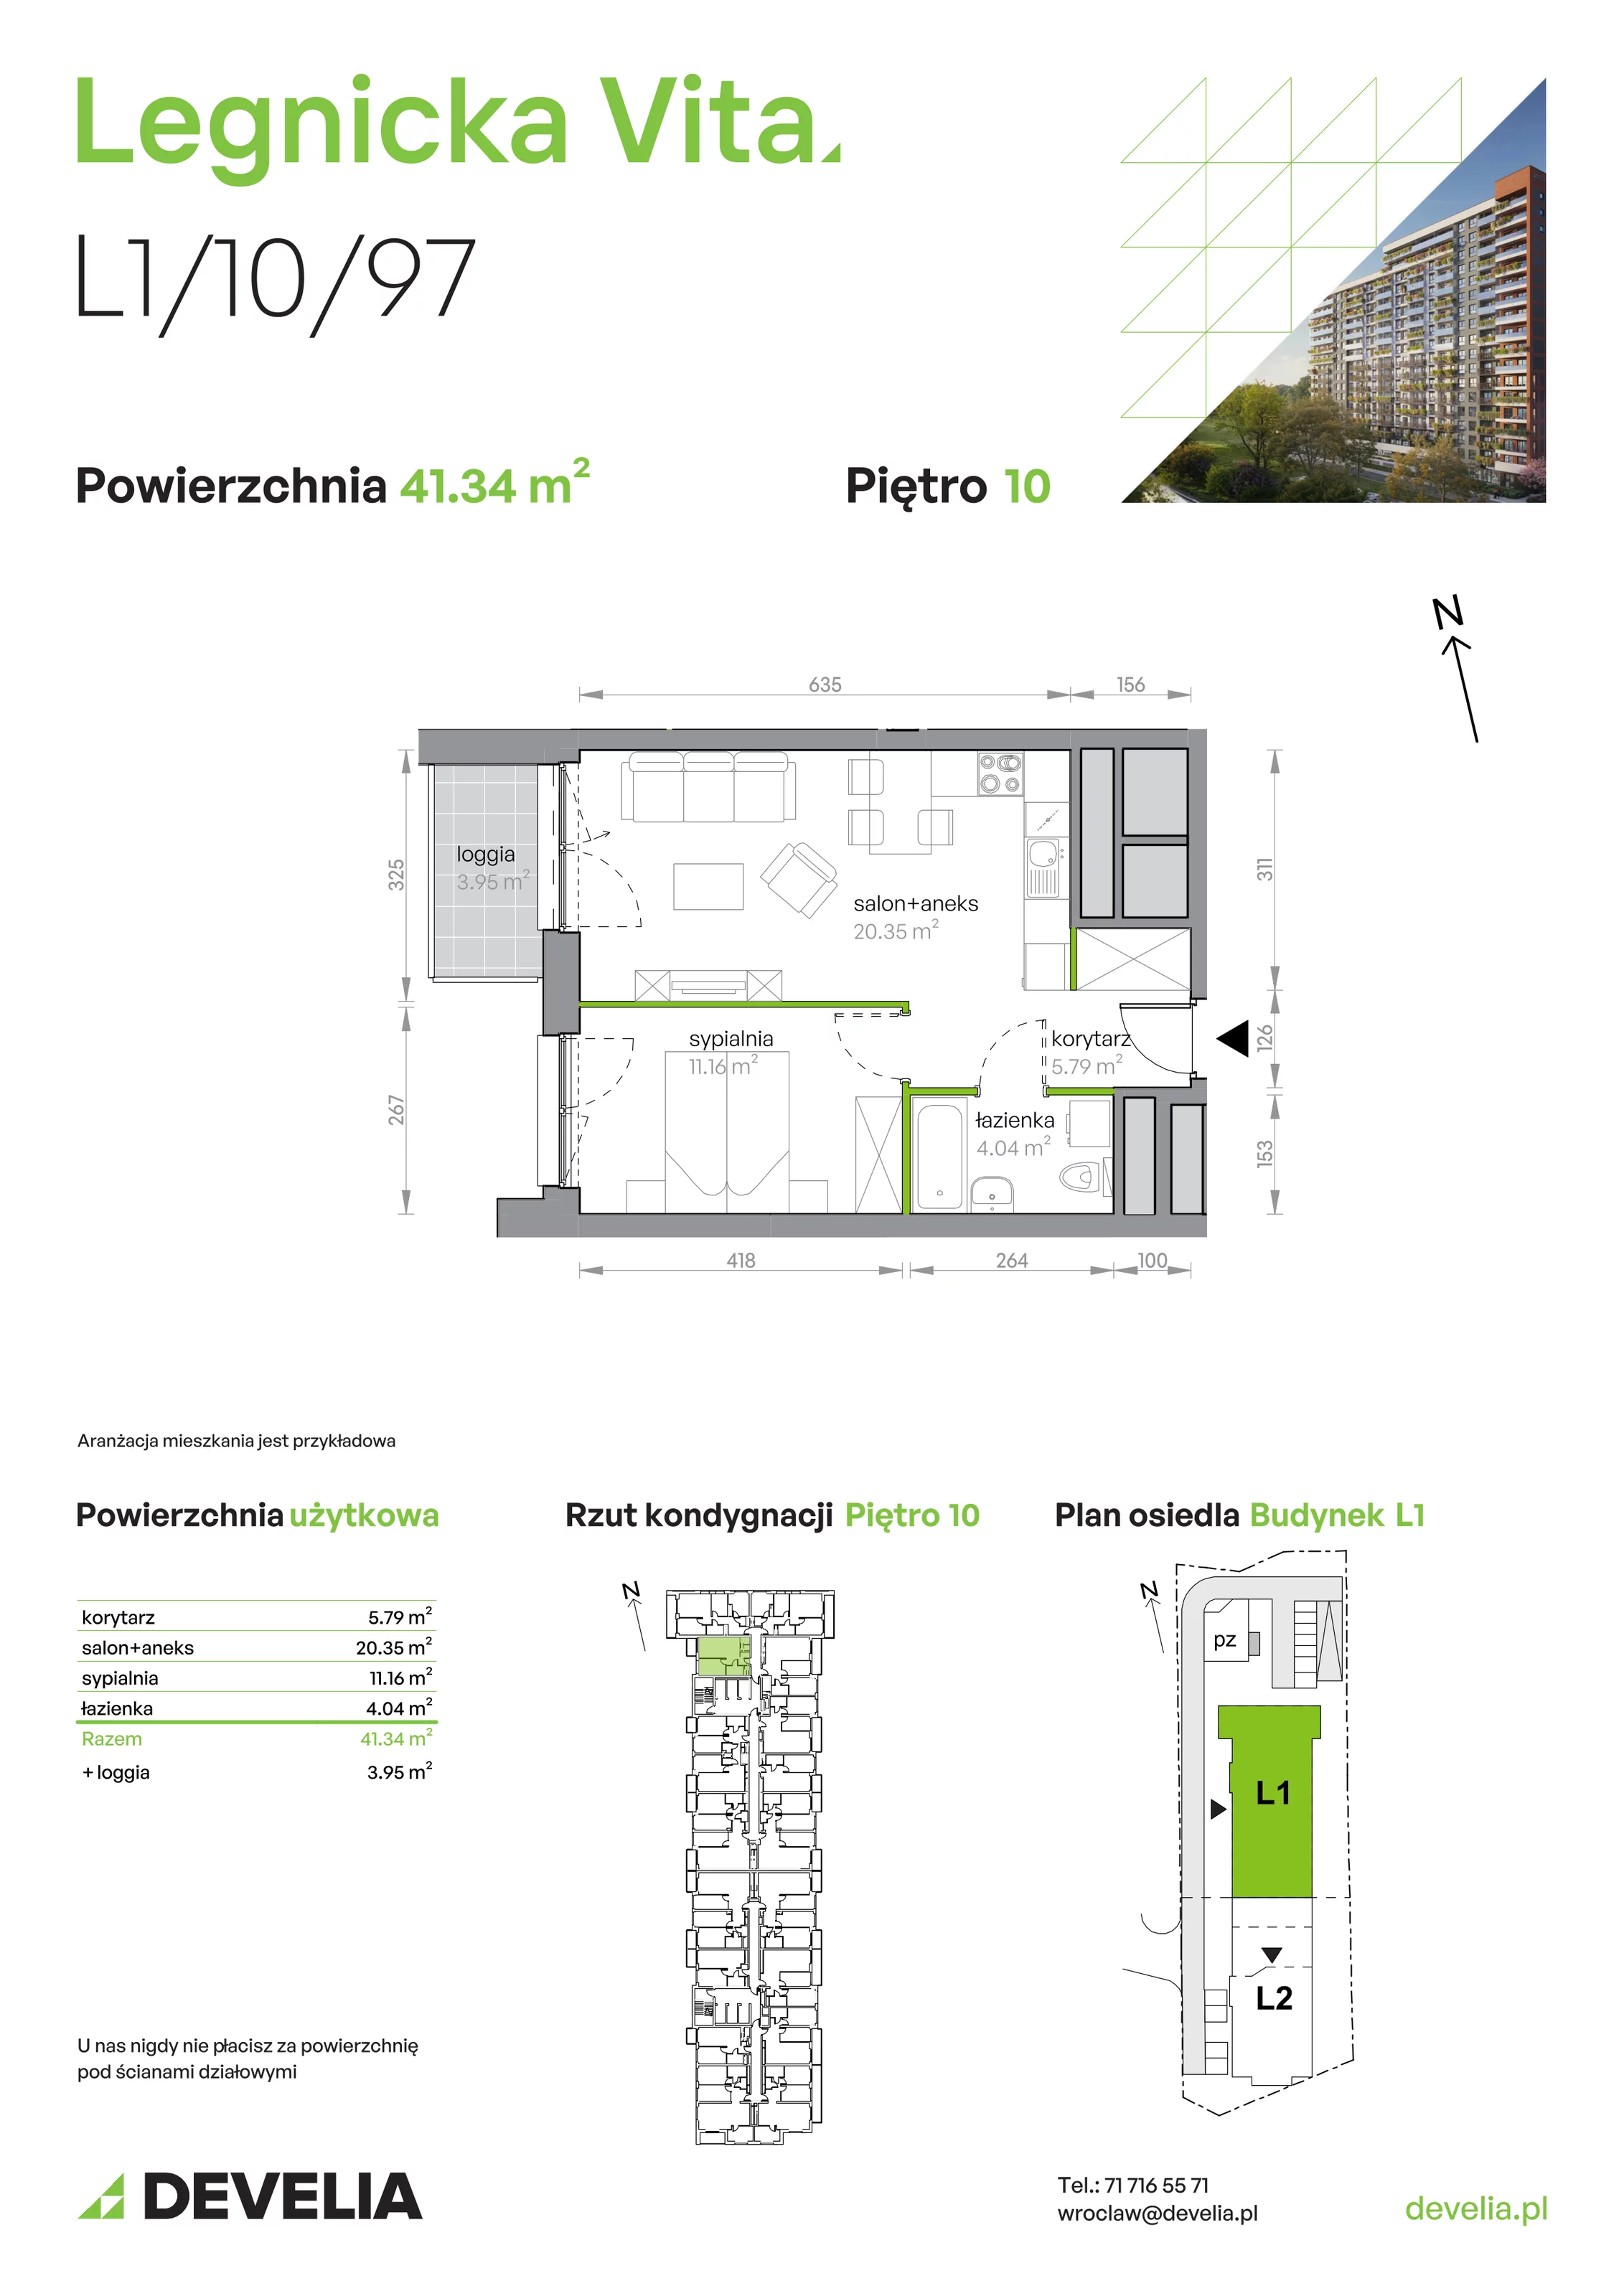 Mieszkanie 41,34 m², piętro 10, oferta nr L1/10/97, Legnicka Vita, Wrocław, Gądów-Popowice Południowe, Popowice, ul. Legnicka 52 A